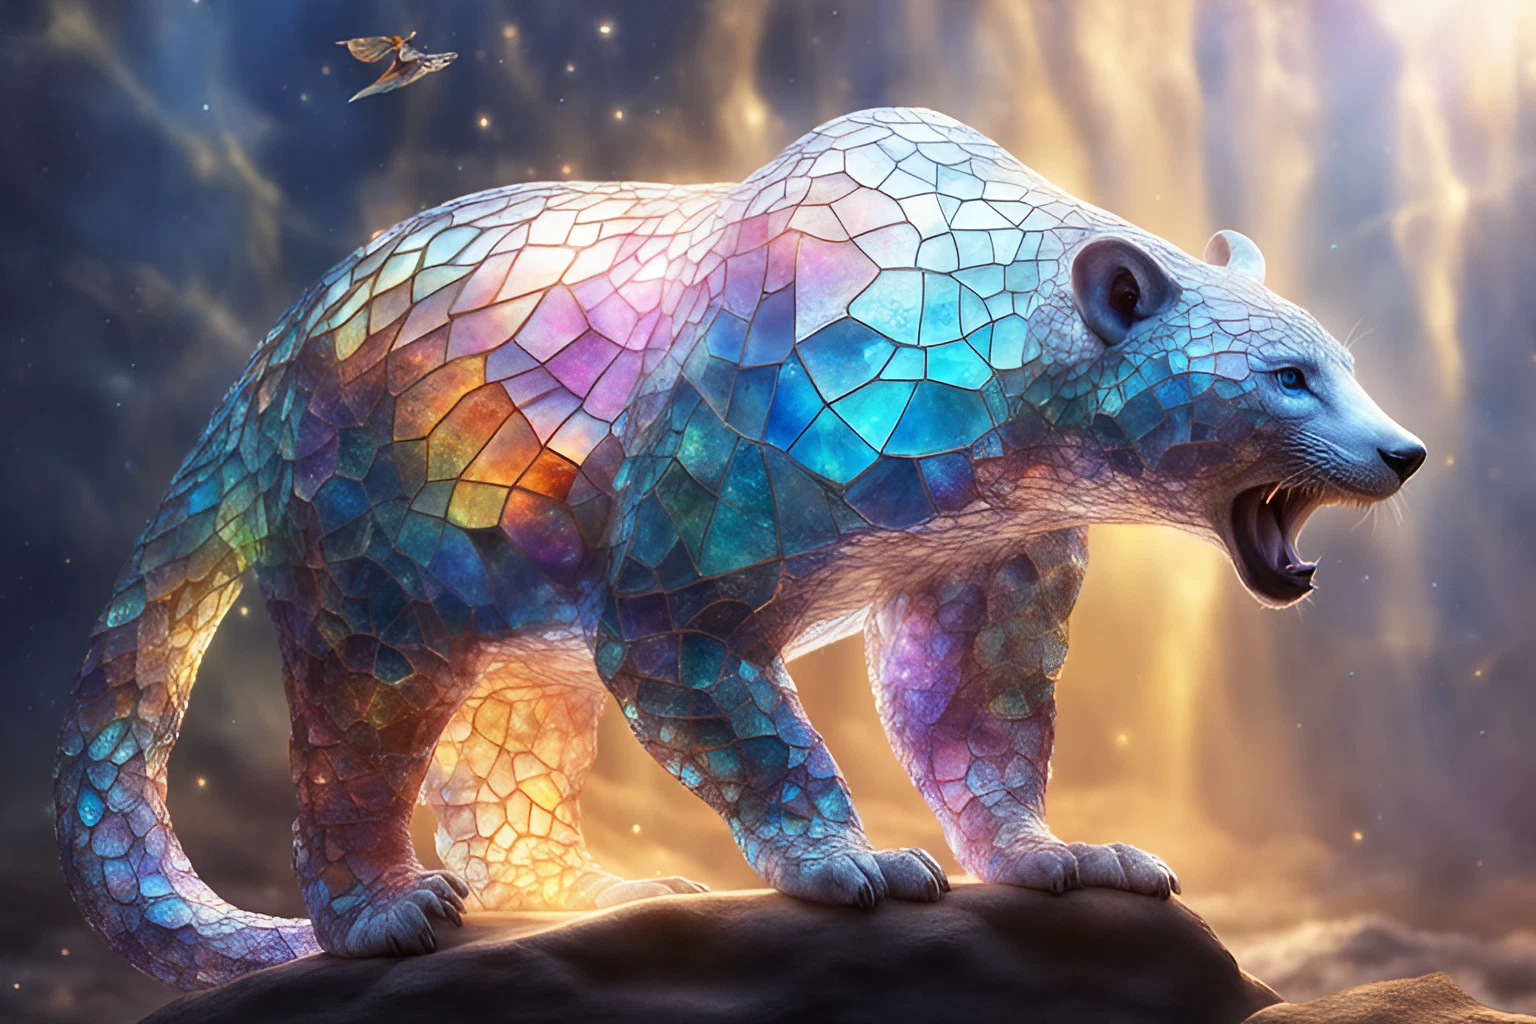 虹色のガラスの白熊＆かっこいい神聖な聖獣と黄金の木々のリアルな3Dイラスト画像素材